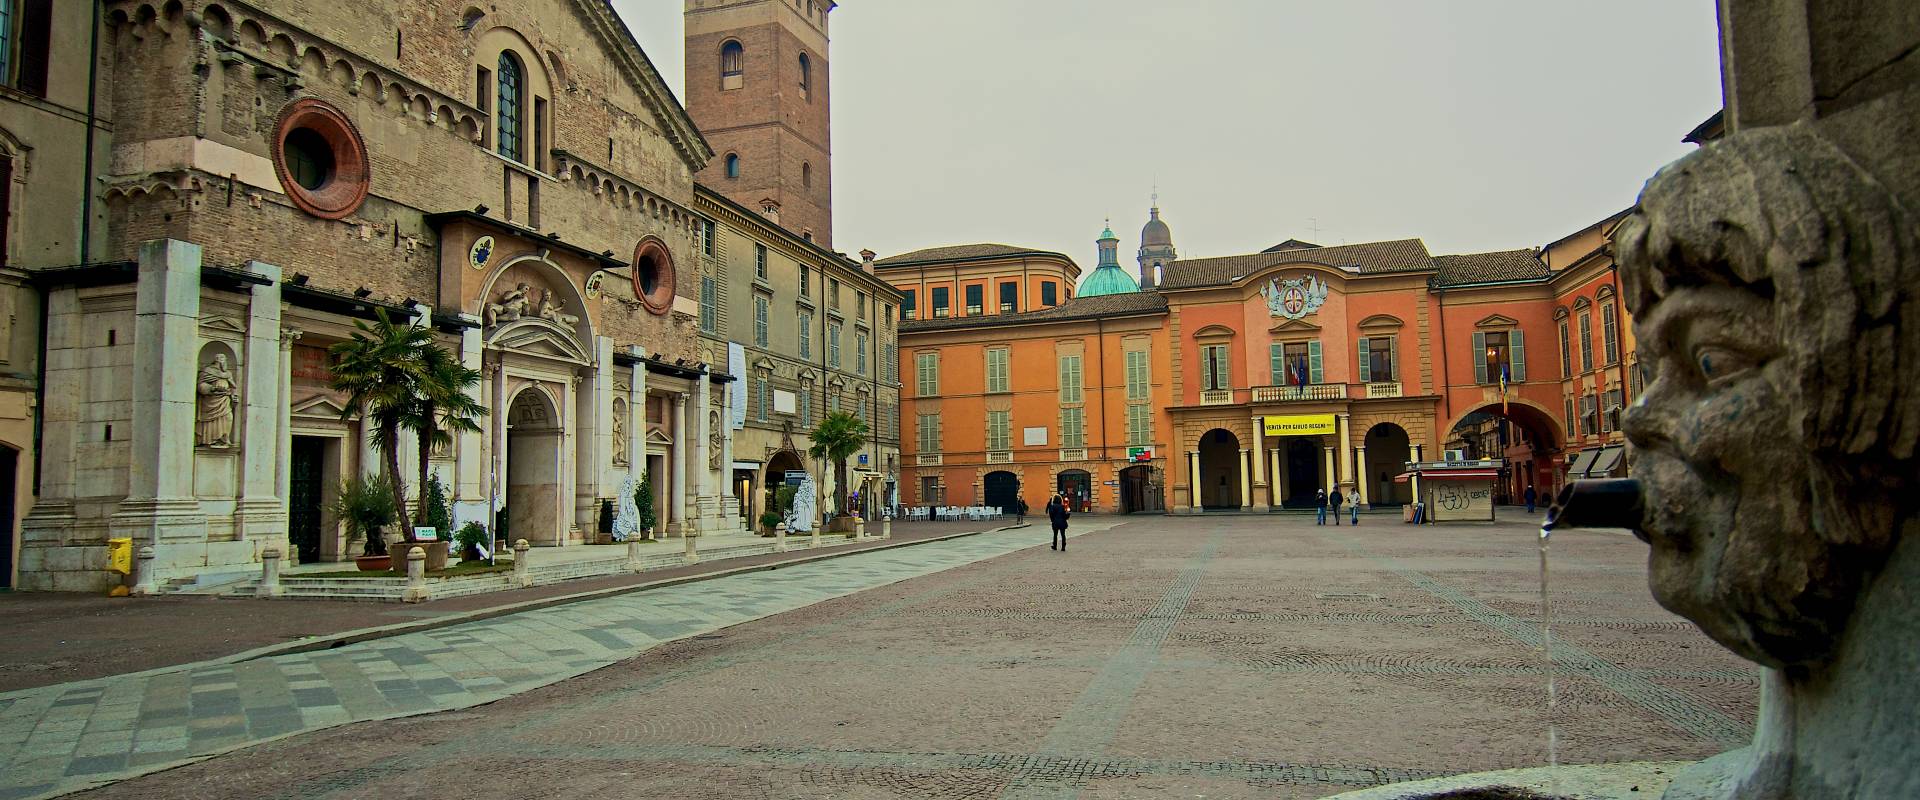 La Cattedrale di Reggio Emilia foto di Caba2011